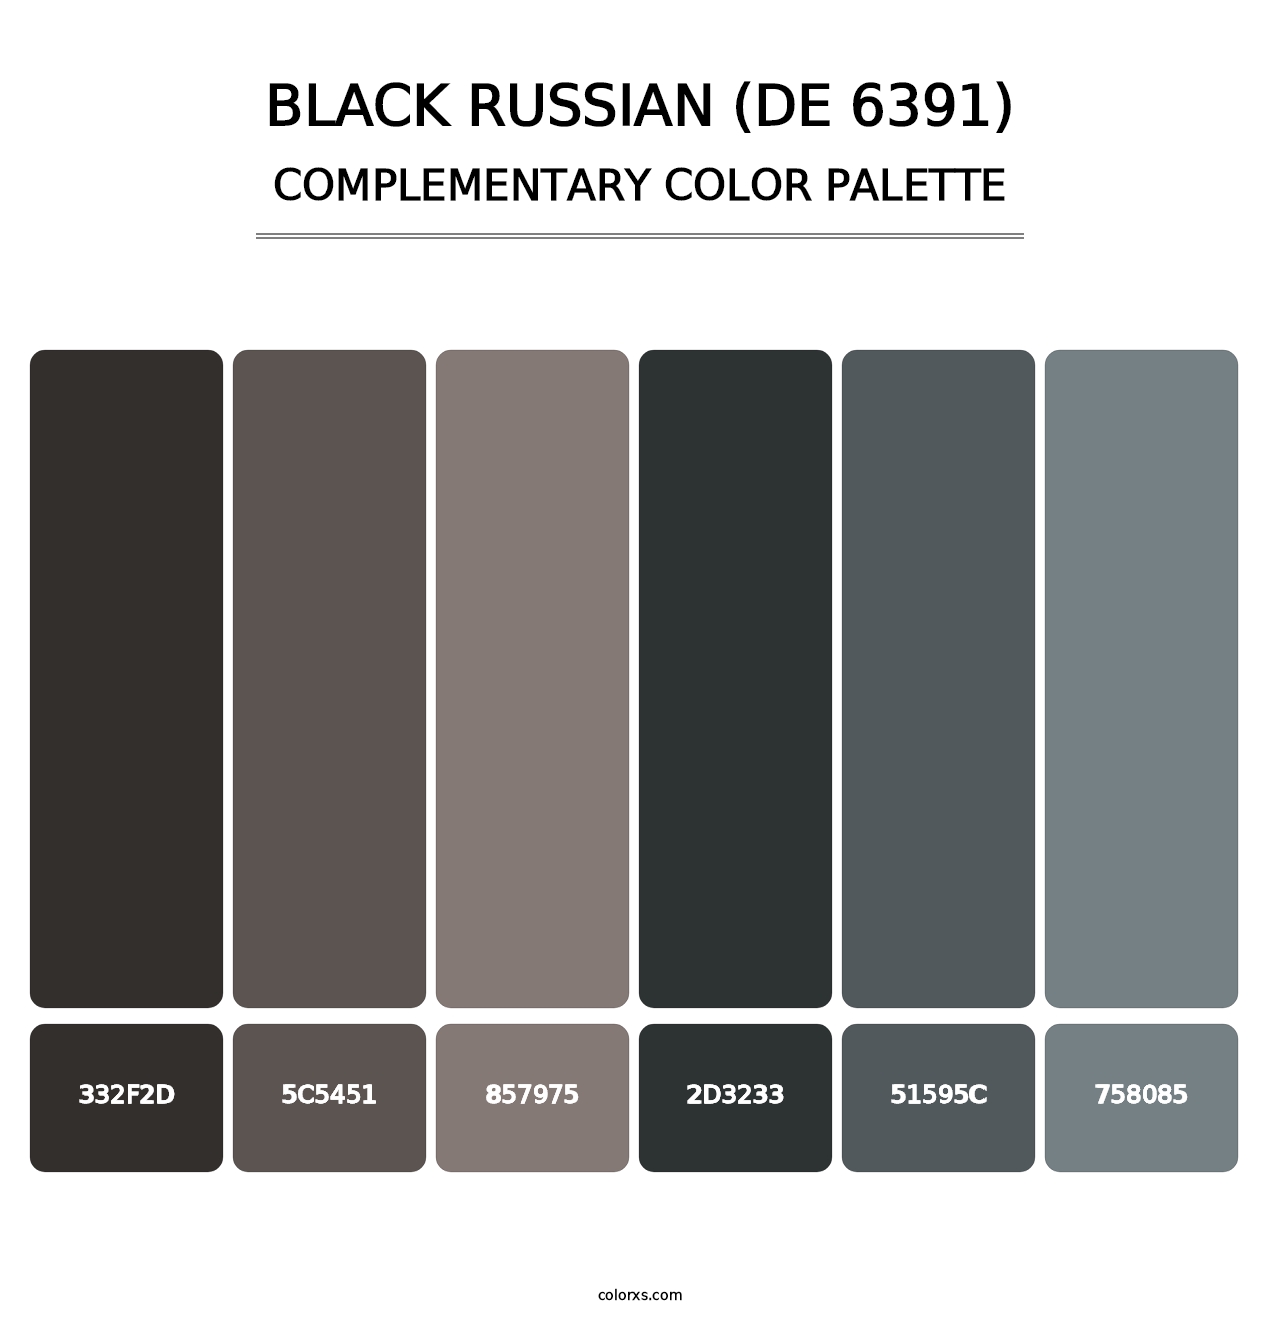 Black Russian (DE 6391) - Complementary Color Palette